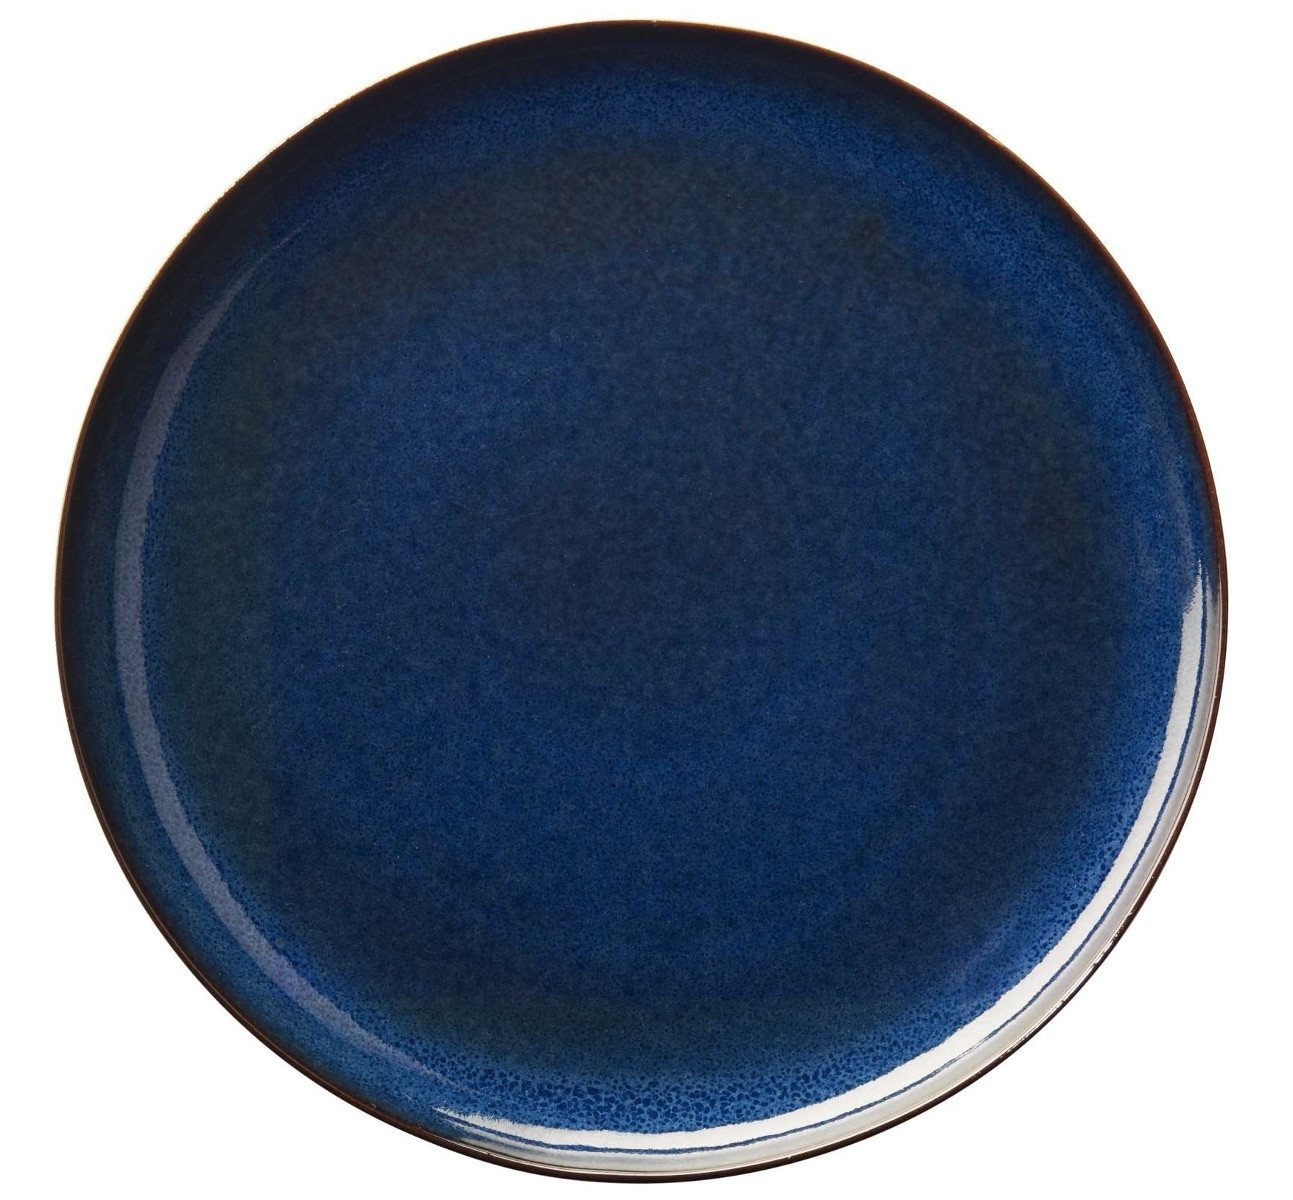 Bild von Saisons Platzteller 31cm rund midnight blue (27181119)